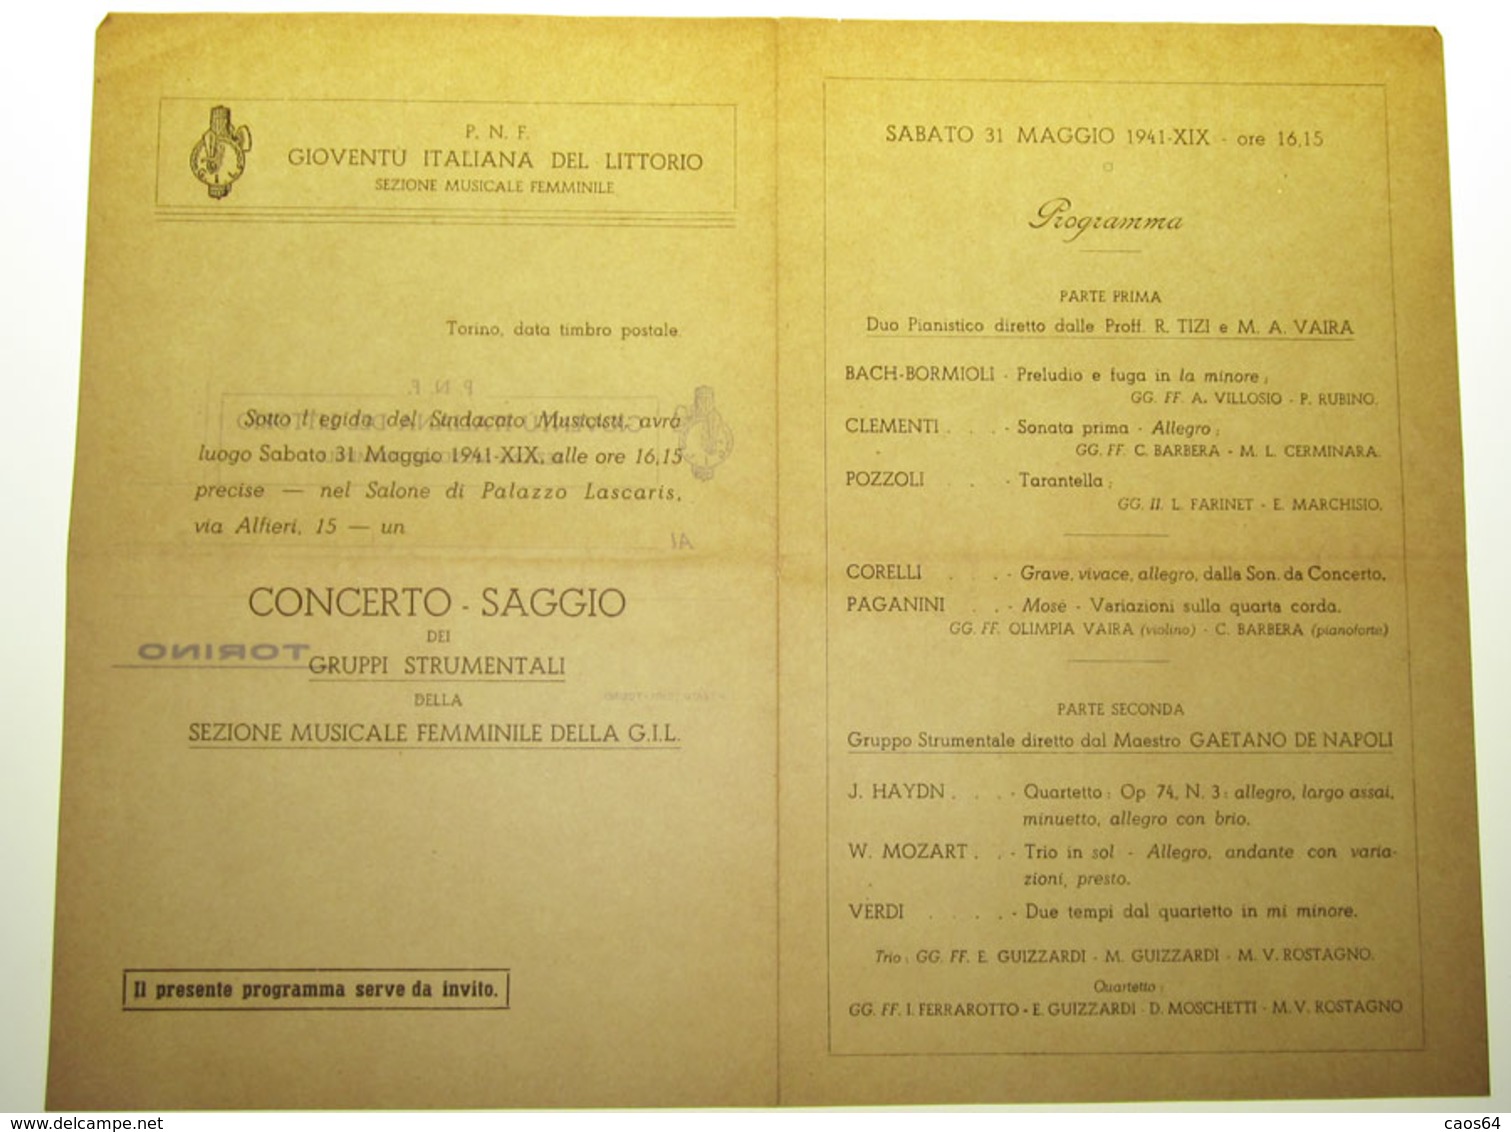 TORINO GIOVENTU' ITALIANA DEL LITTORIO PROGRAMMA CONCERTO SAGGIO   1941 - Programs